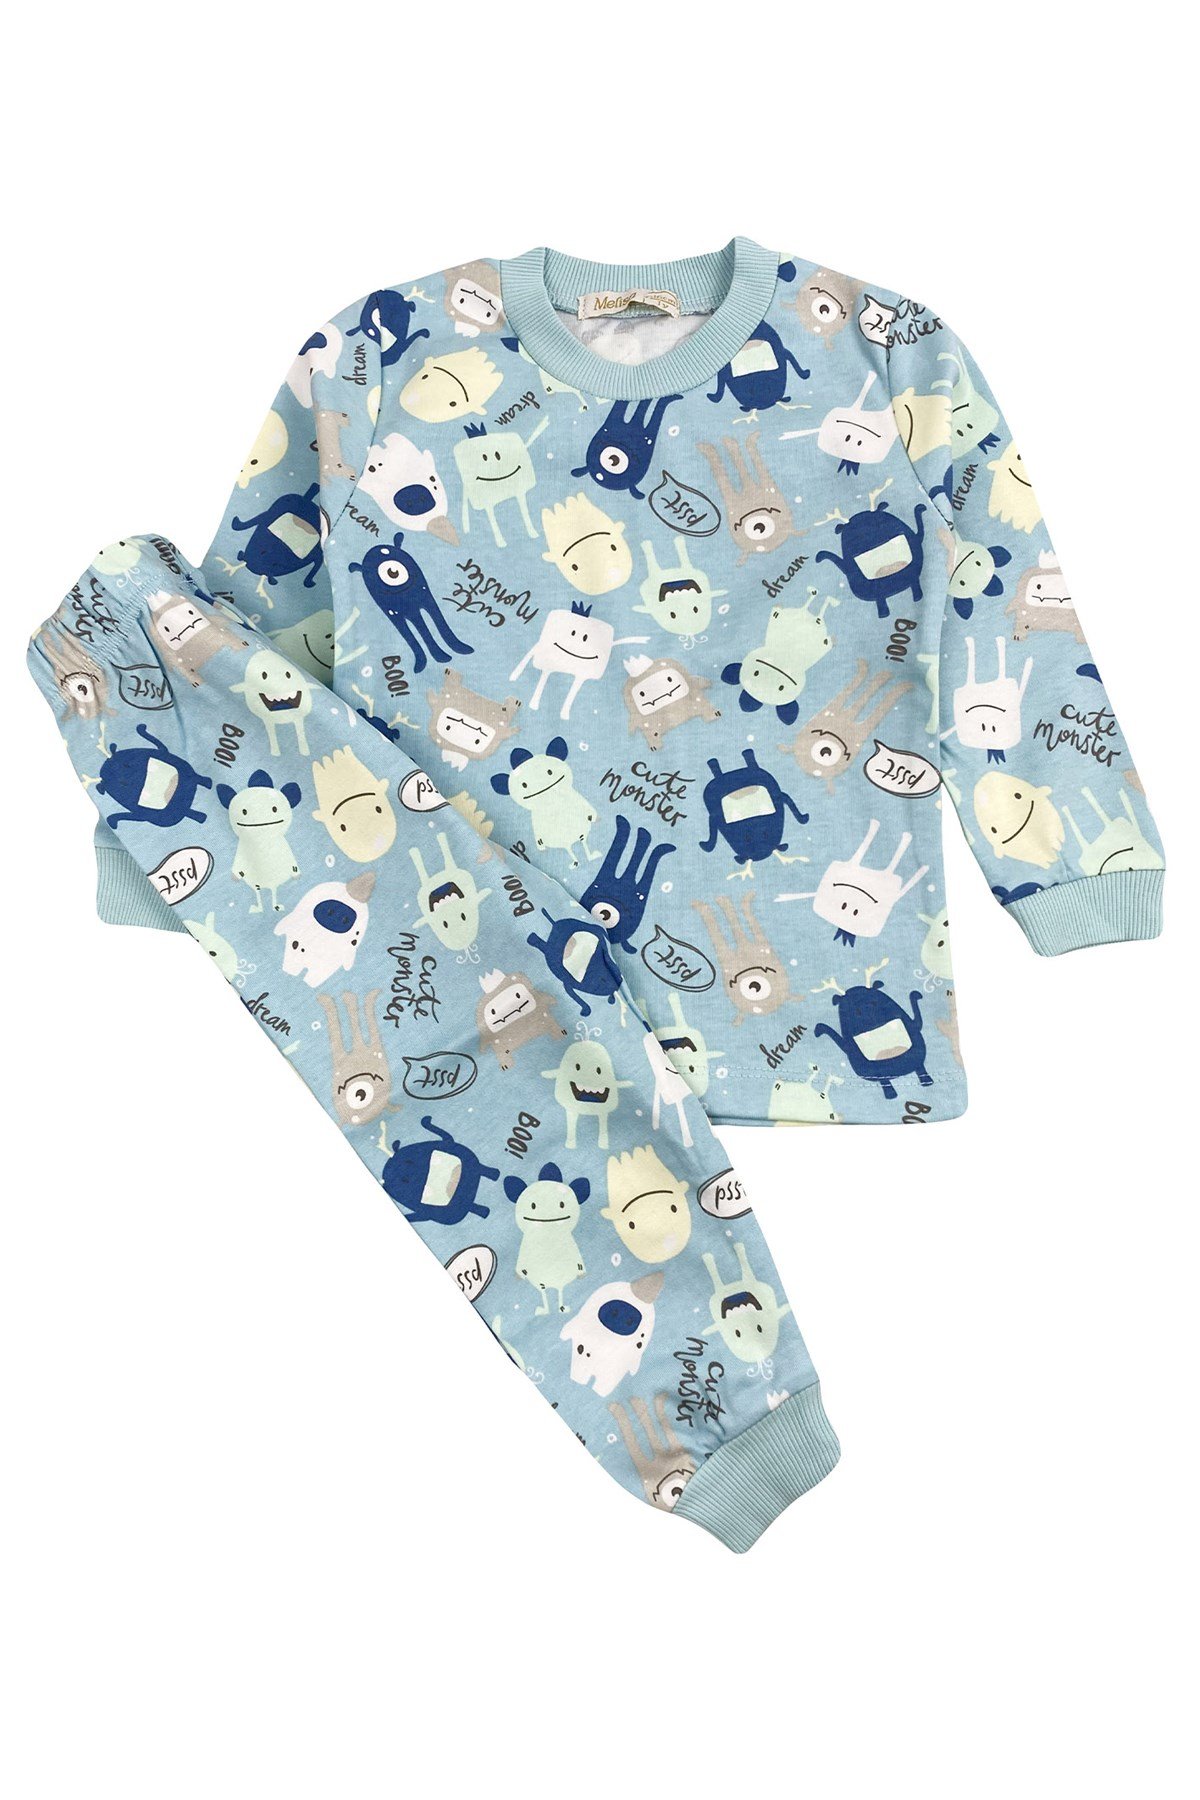 Boo Erkek Bebek Pijama Takımı I hansbebe